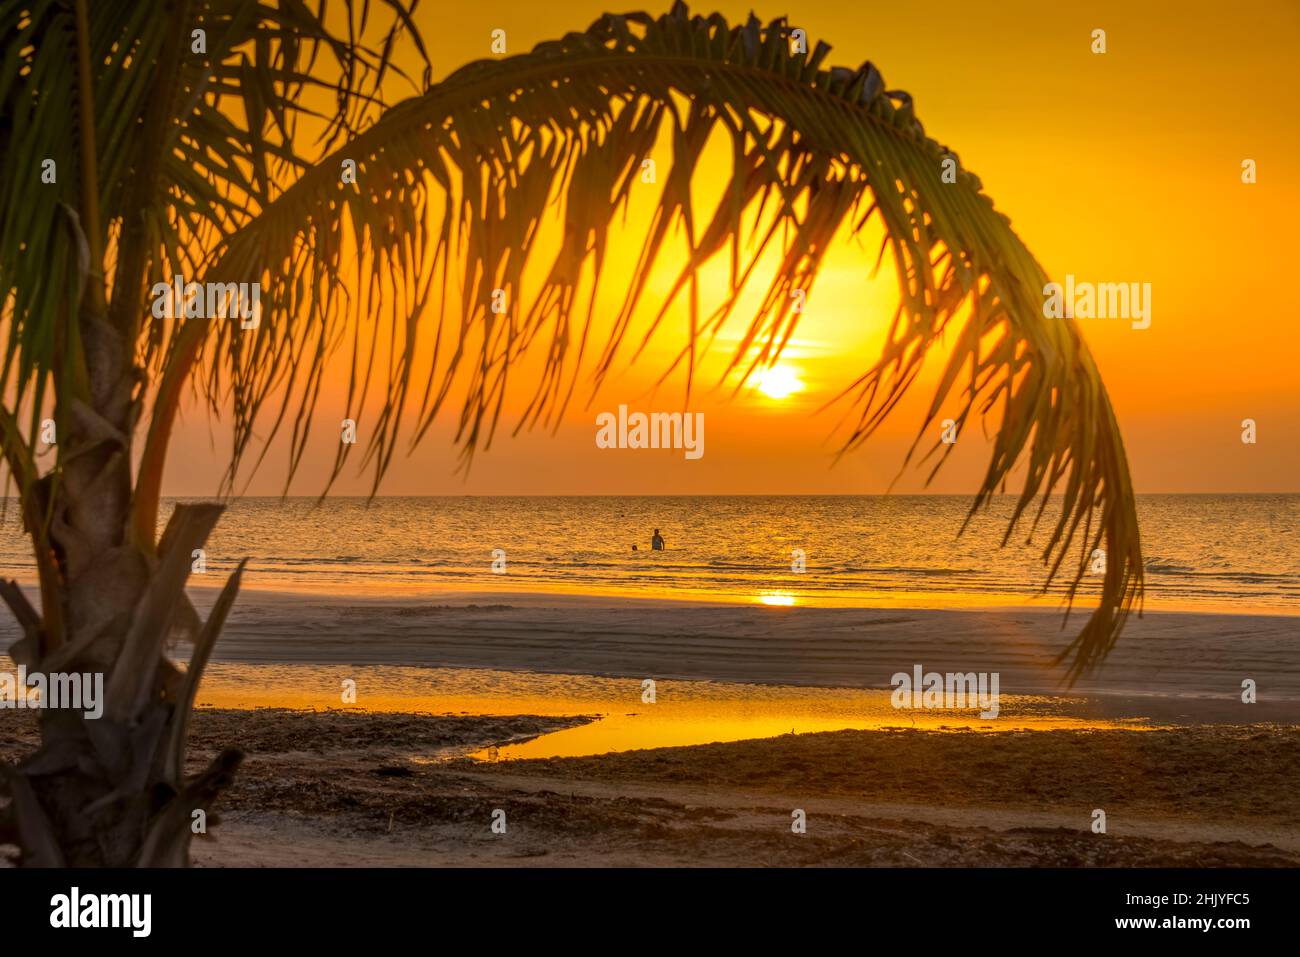 Palmenstrand, Isla Holbox, Quintana Roo, Mexiko Stock Photo